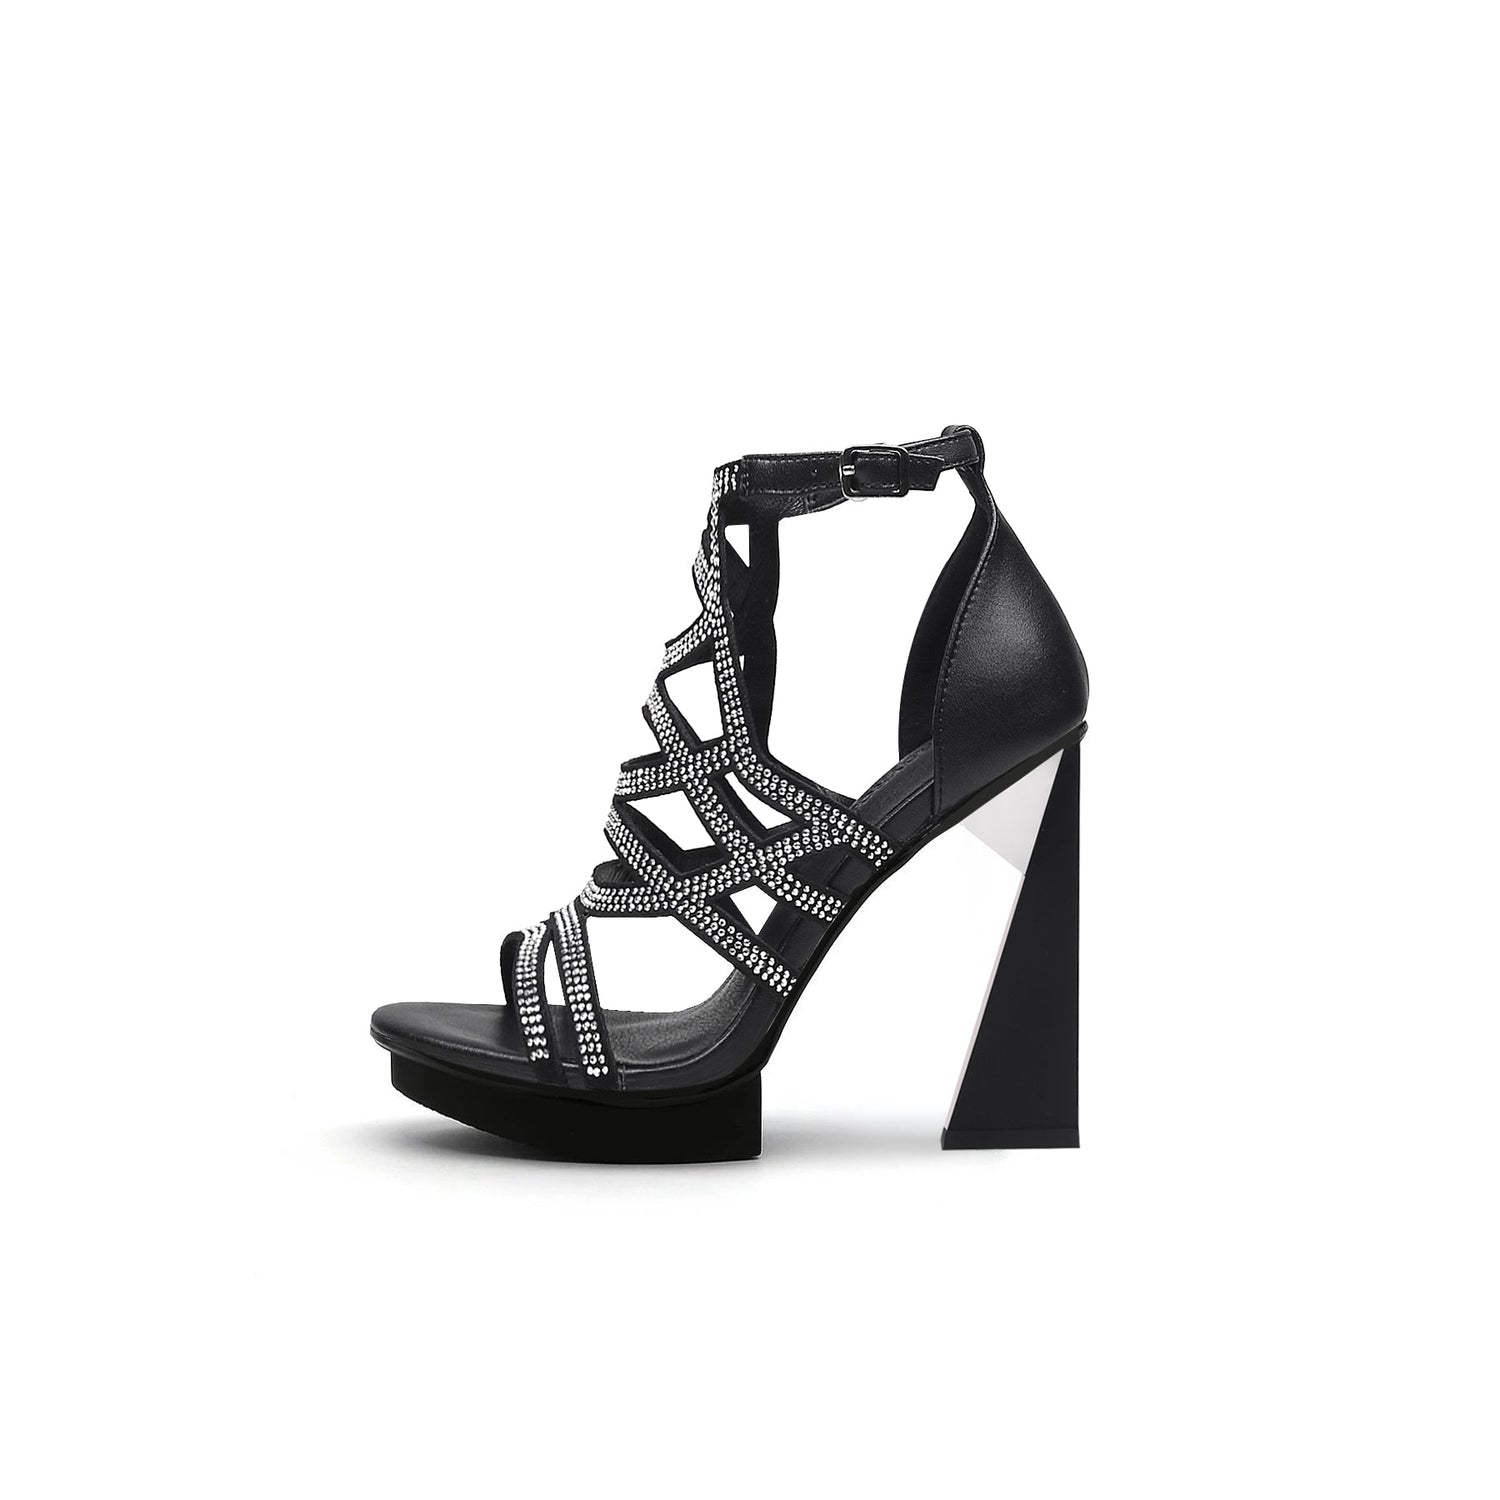 Beading Net Black Ankle Sandals - 0cm